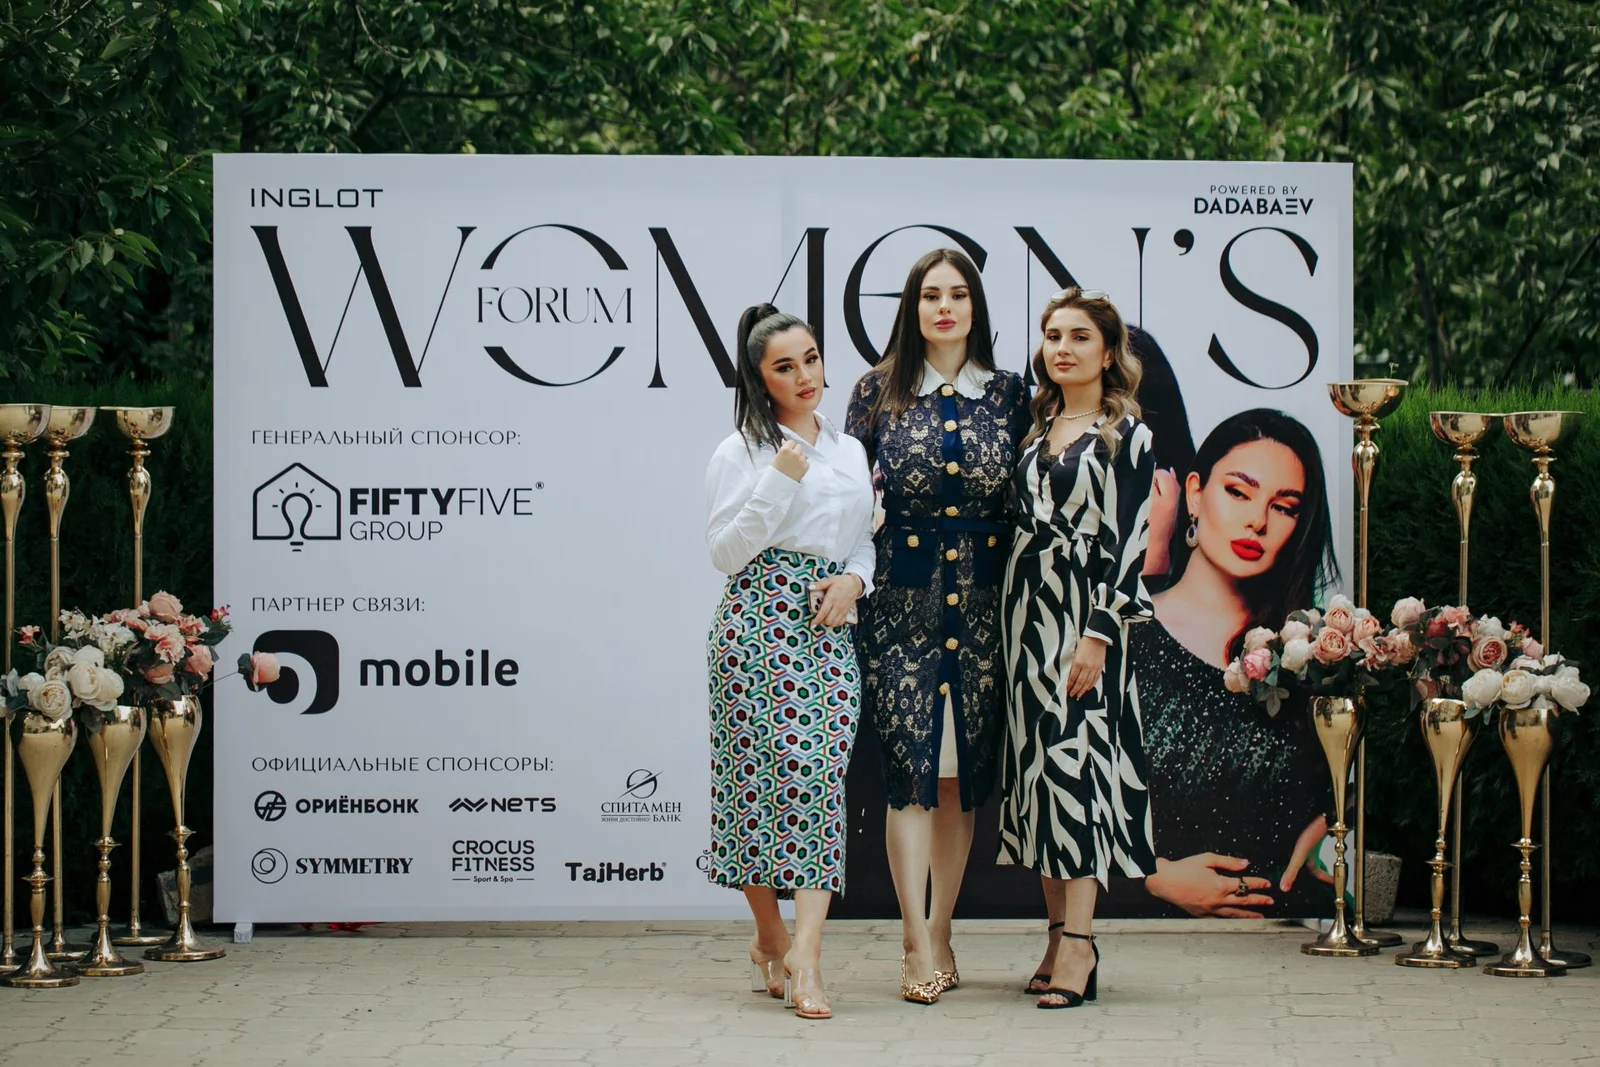 VESNA FORUM в Душанбе: как прошло яркое и красивое событие для женщин